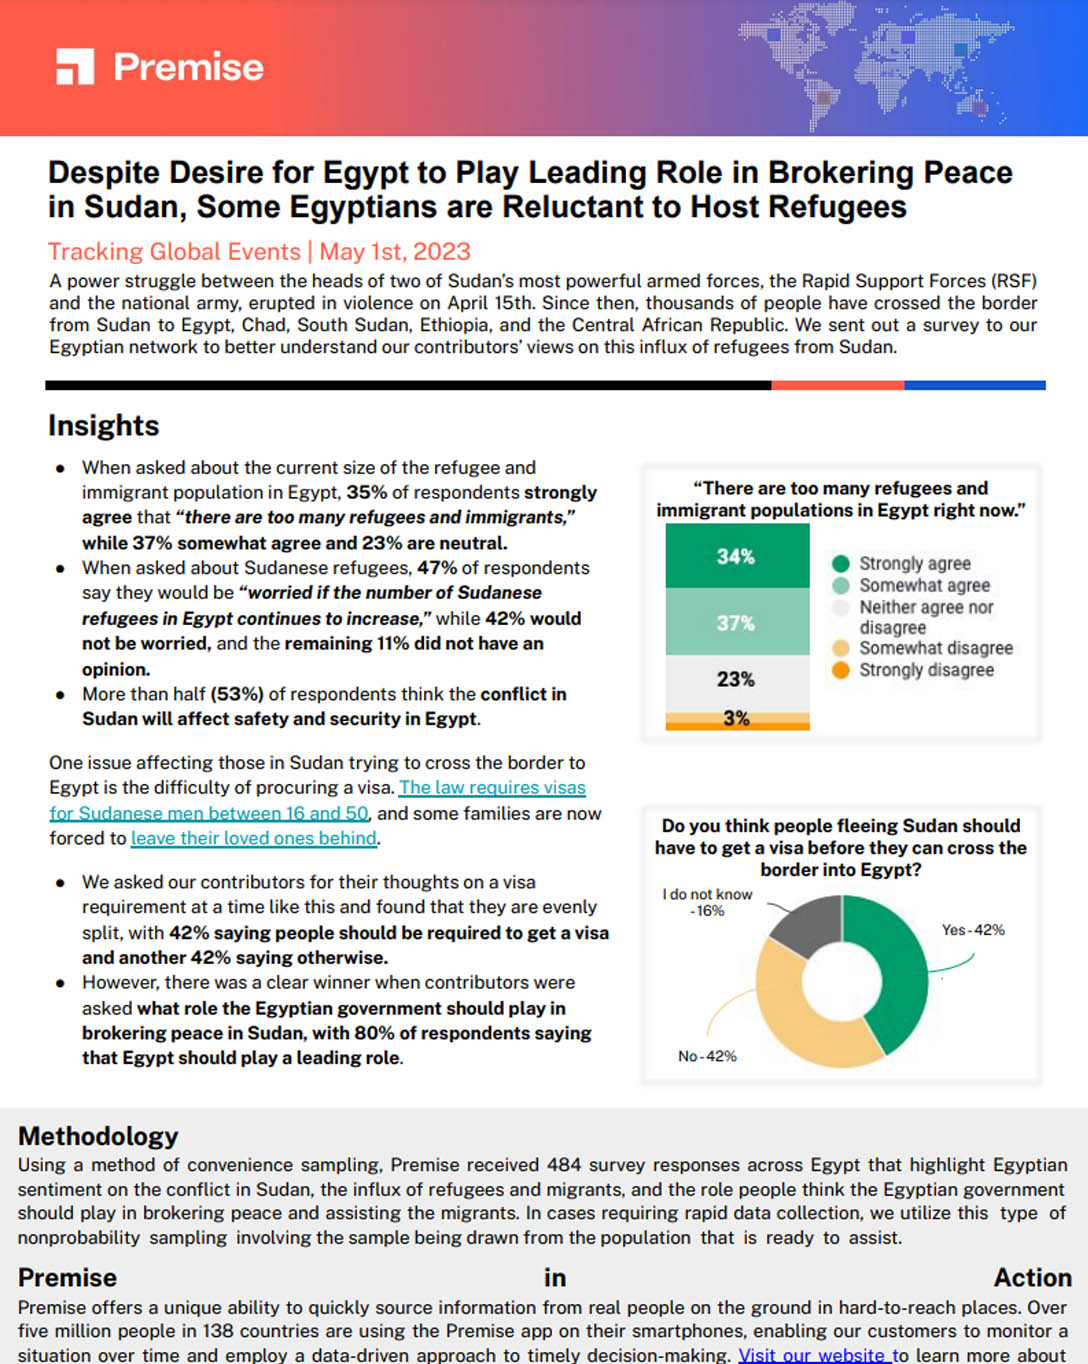 A pesar del deseo de que Egipto desempeñe un papel destacado en la pacificación de Sudán, algunos egipcios son reacios a acoger refugiados